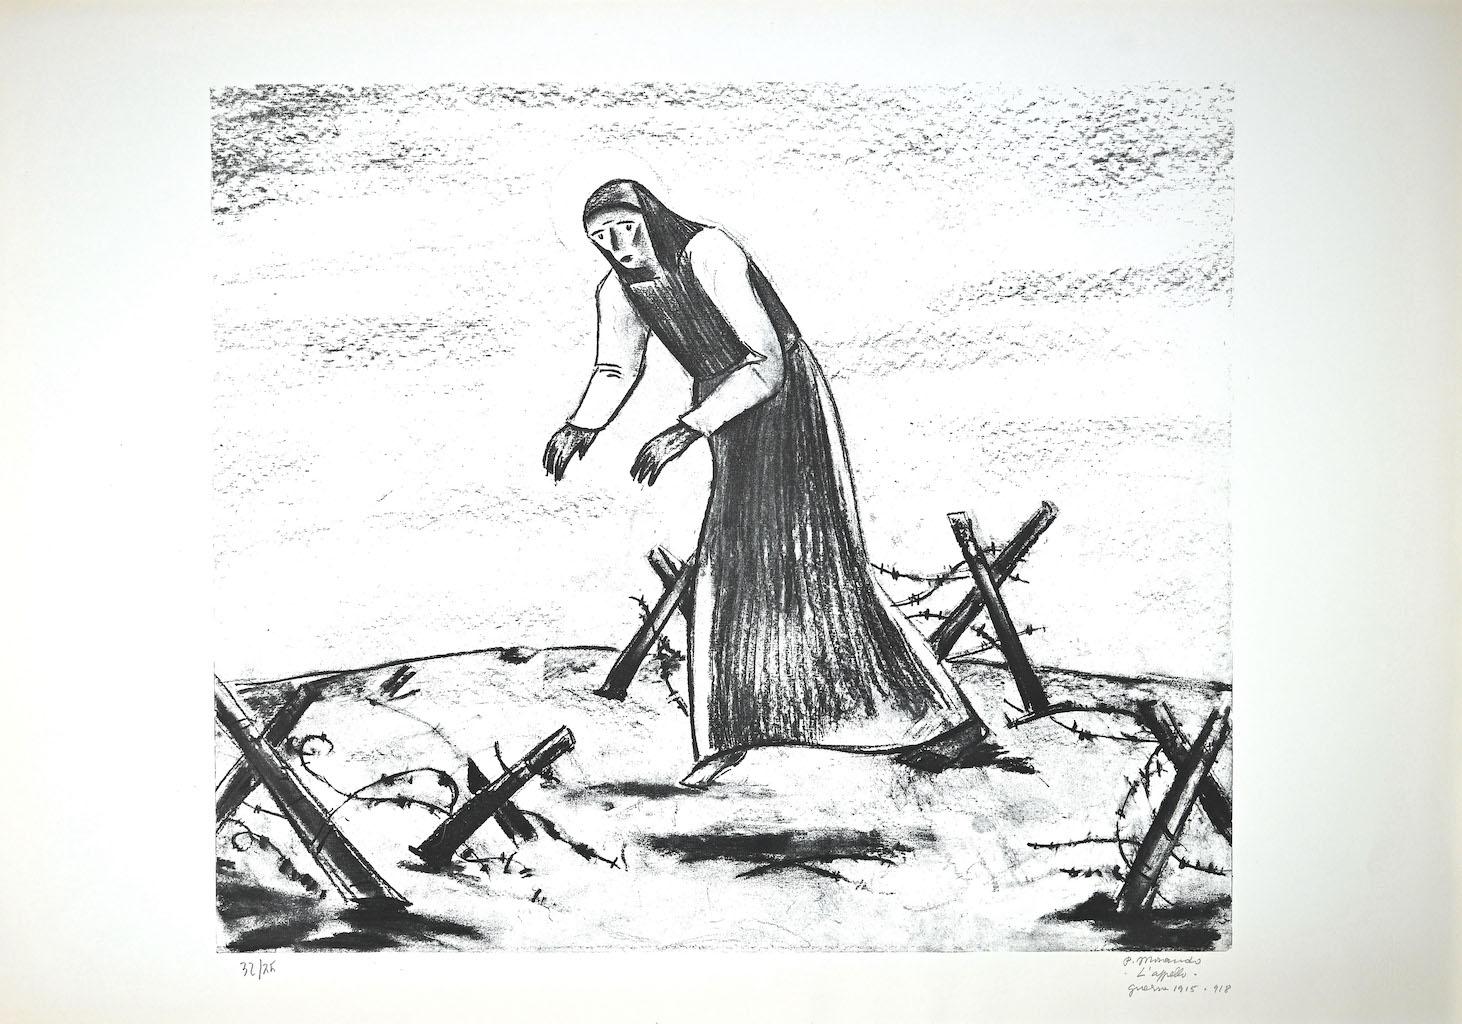 Appel est une lithographie originale réalisée par l'artiste italien Pietro Morando (Alessandria 1889- 1980).

Signé à la main en bas à droite au crayon.

Numérotée en bas à gauche, l'édition est de 32/75 exemplaires.

Bonnes conditions.

Pietro